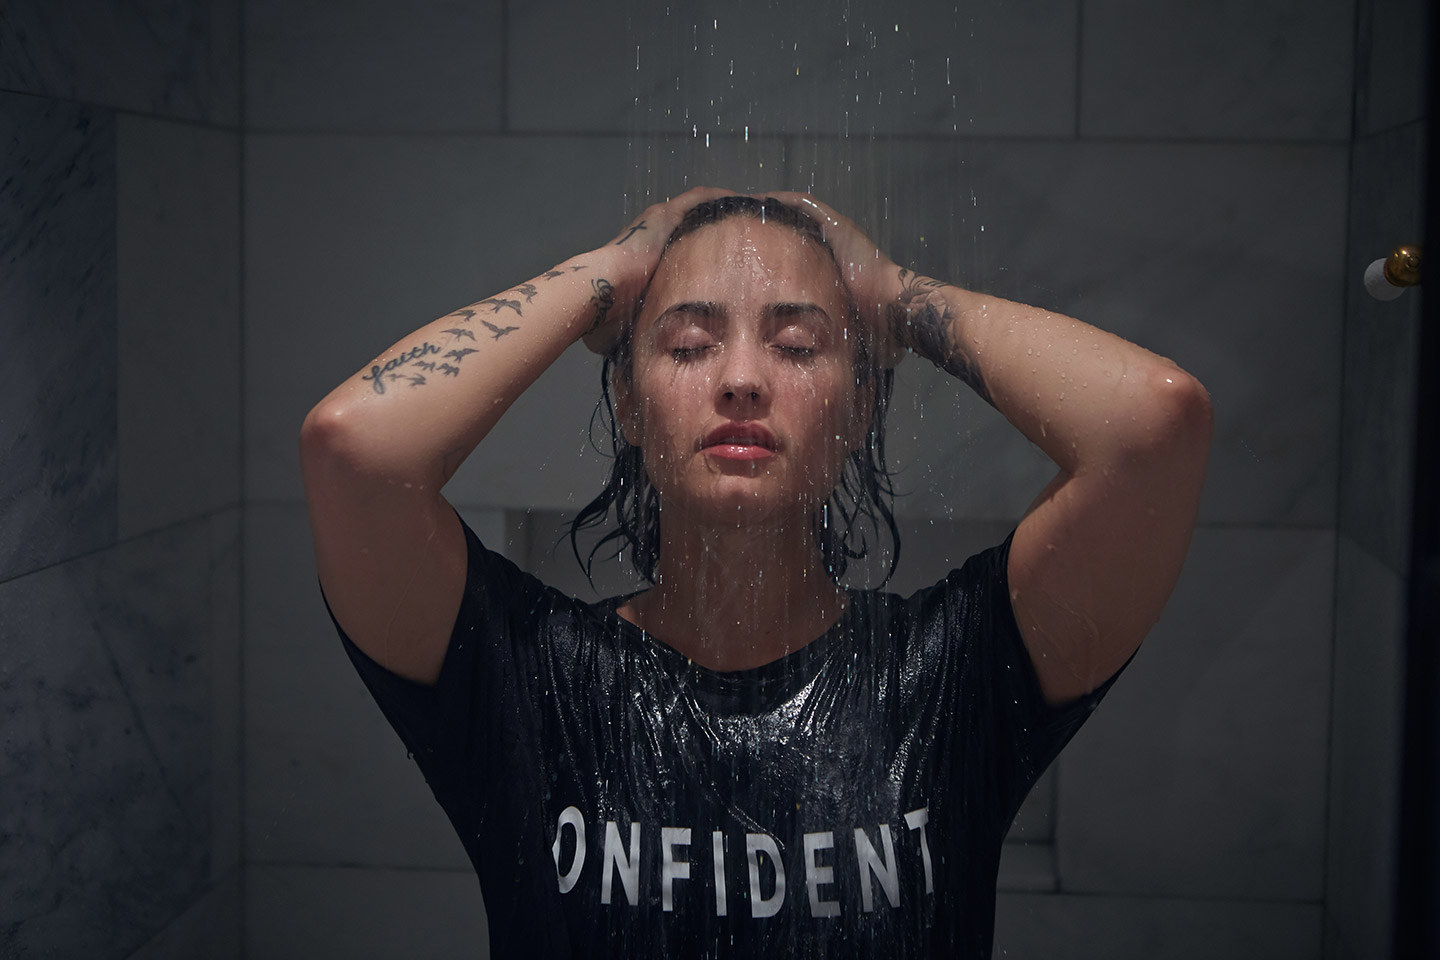 People 1440x960 Demi Lovato model celebrity wet body wet hair women in shower women